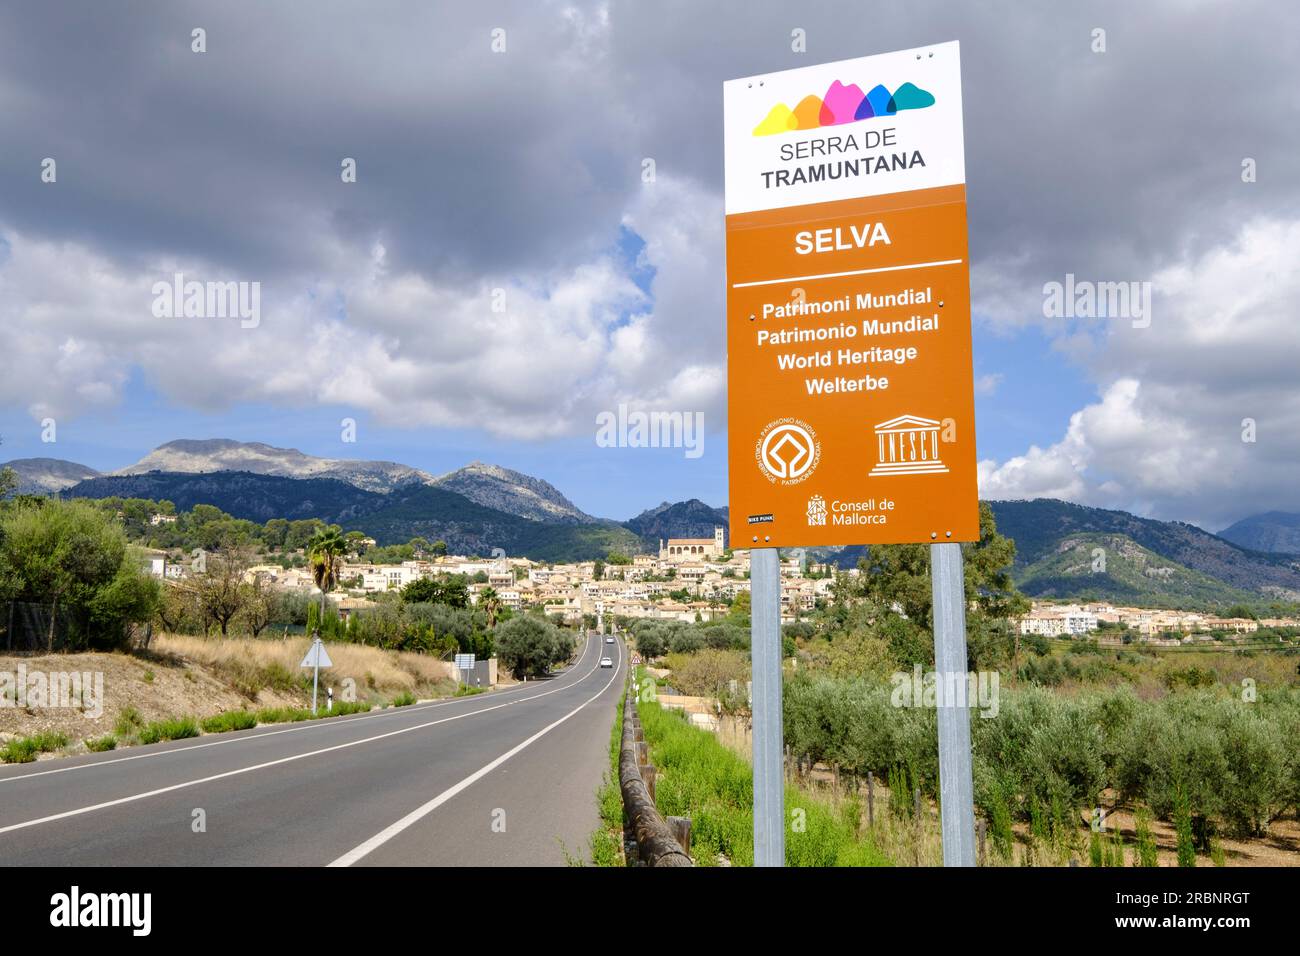 ingreso en la Sierra de Tramontana declarada Patrimonio de la Humanidad por la UNESCO, Selva, Mallorca, balearic islands, spain, europe. Stock Photo